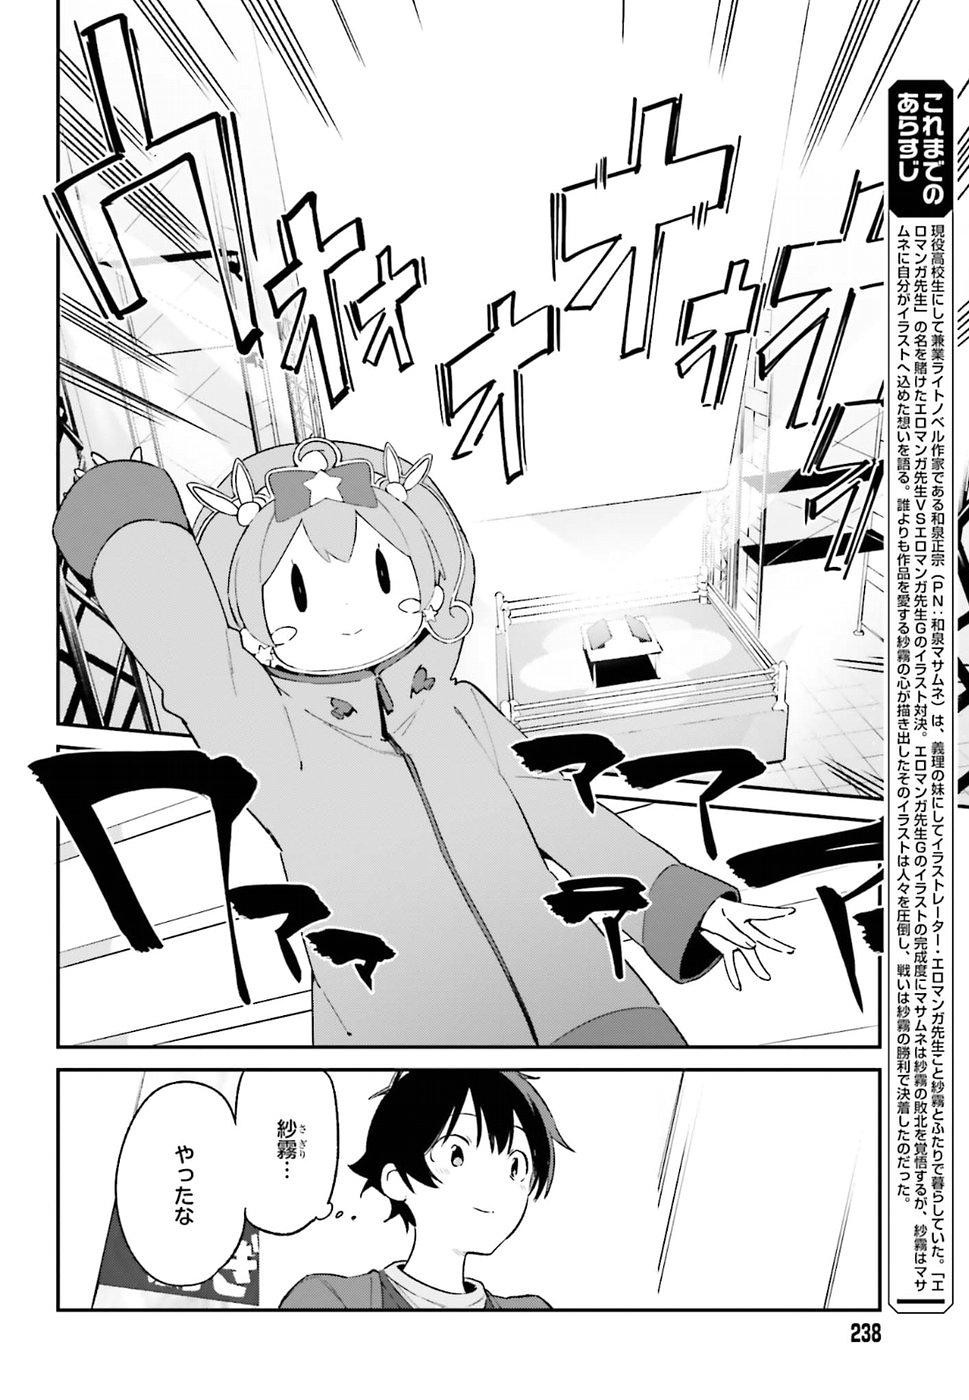 Ero Manga Sensei - Chapter 46 - Page 2